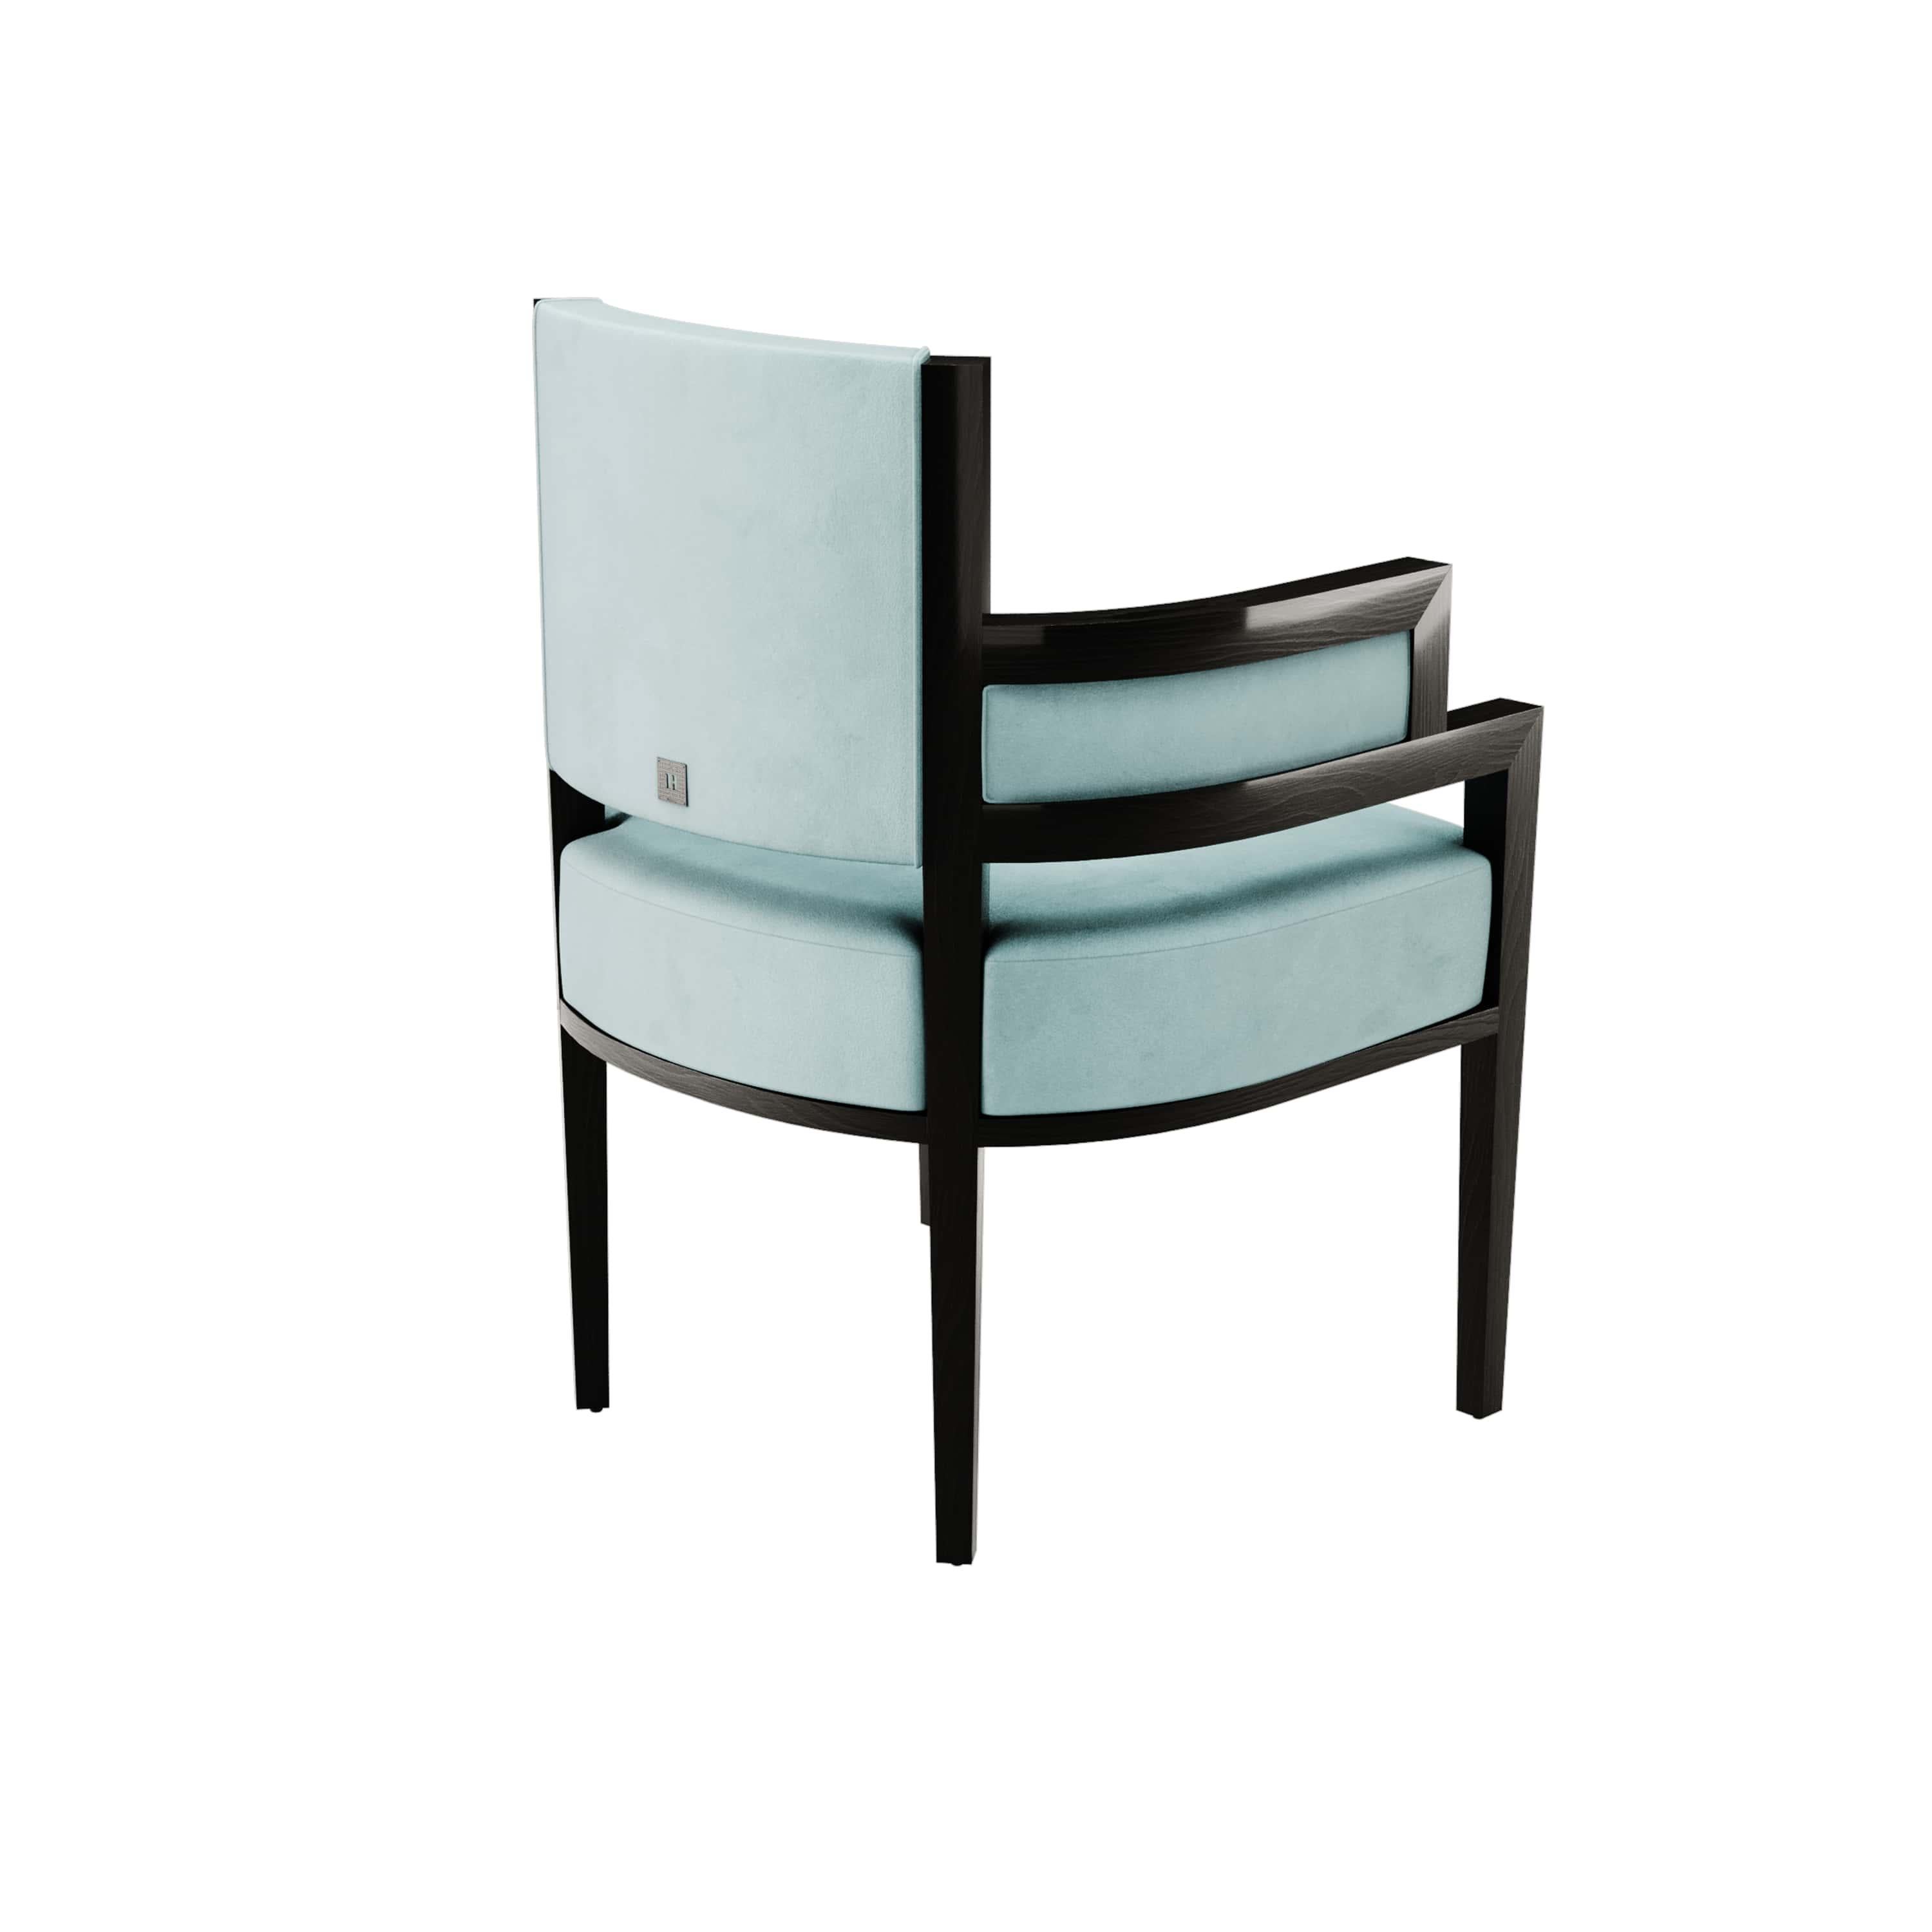 Portuguese Art Deco Style Light Blue Velvet Upholstery Chair Dining Room Chair